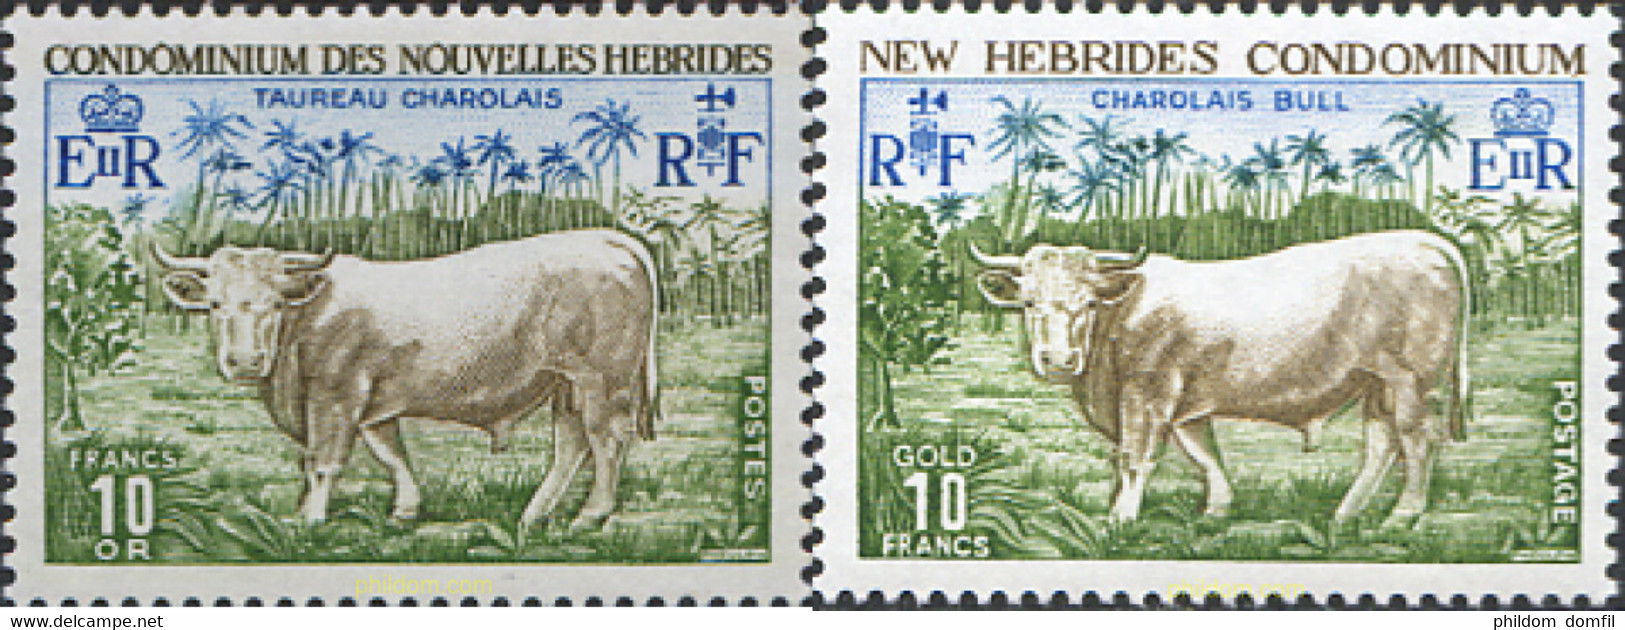 44434 MNH NUEVAS HEBRIDAS 1975 FAUNA - Collections, Lots & Séries